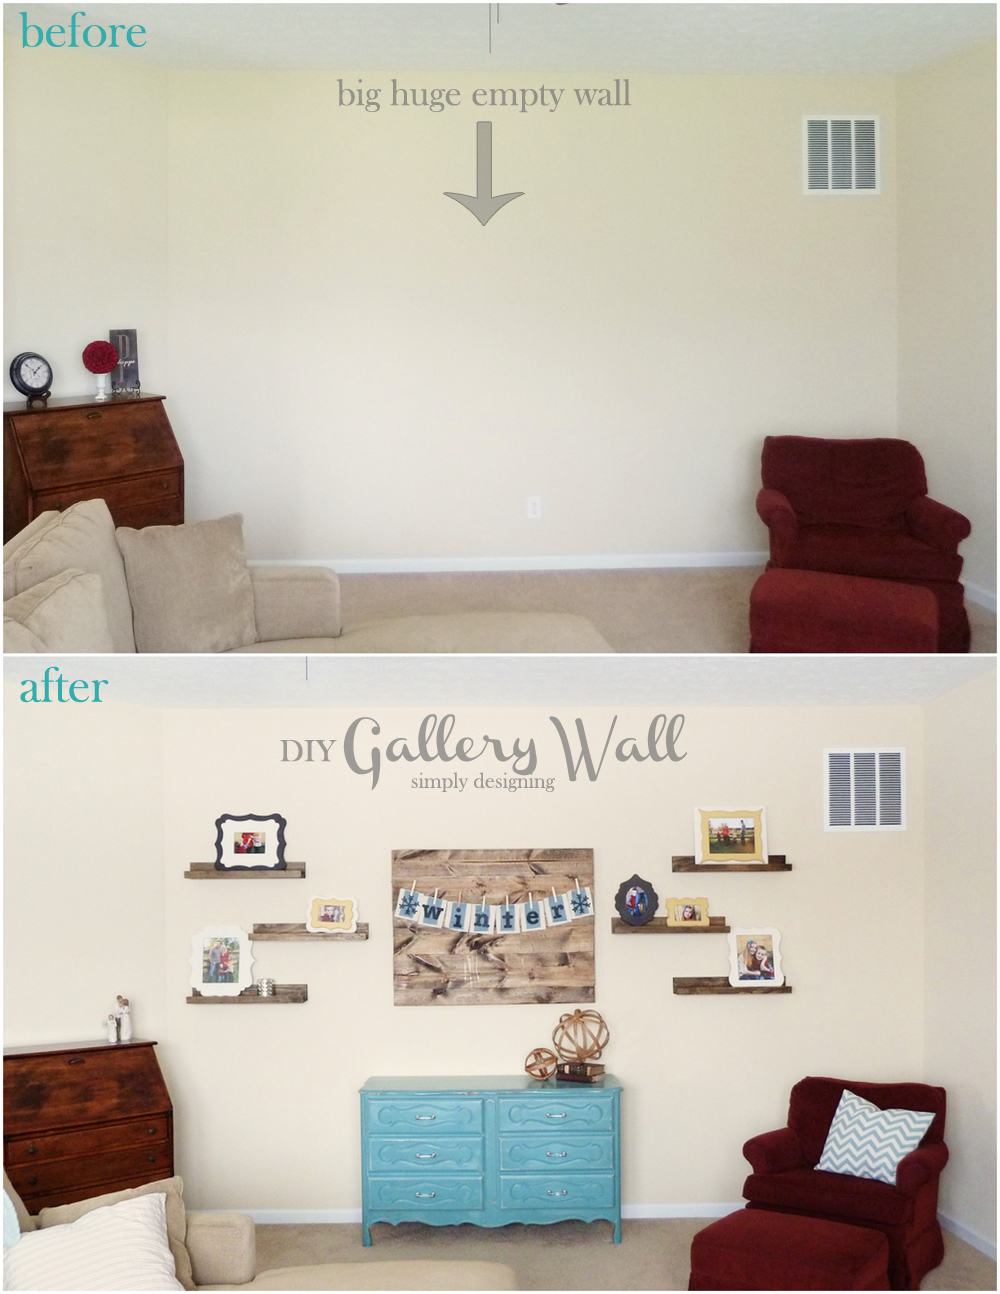 DIY Gallery Wall Reveal | #diy #gallerywall #homedecor